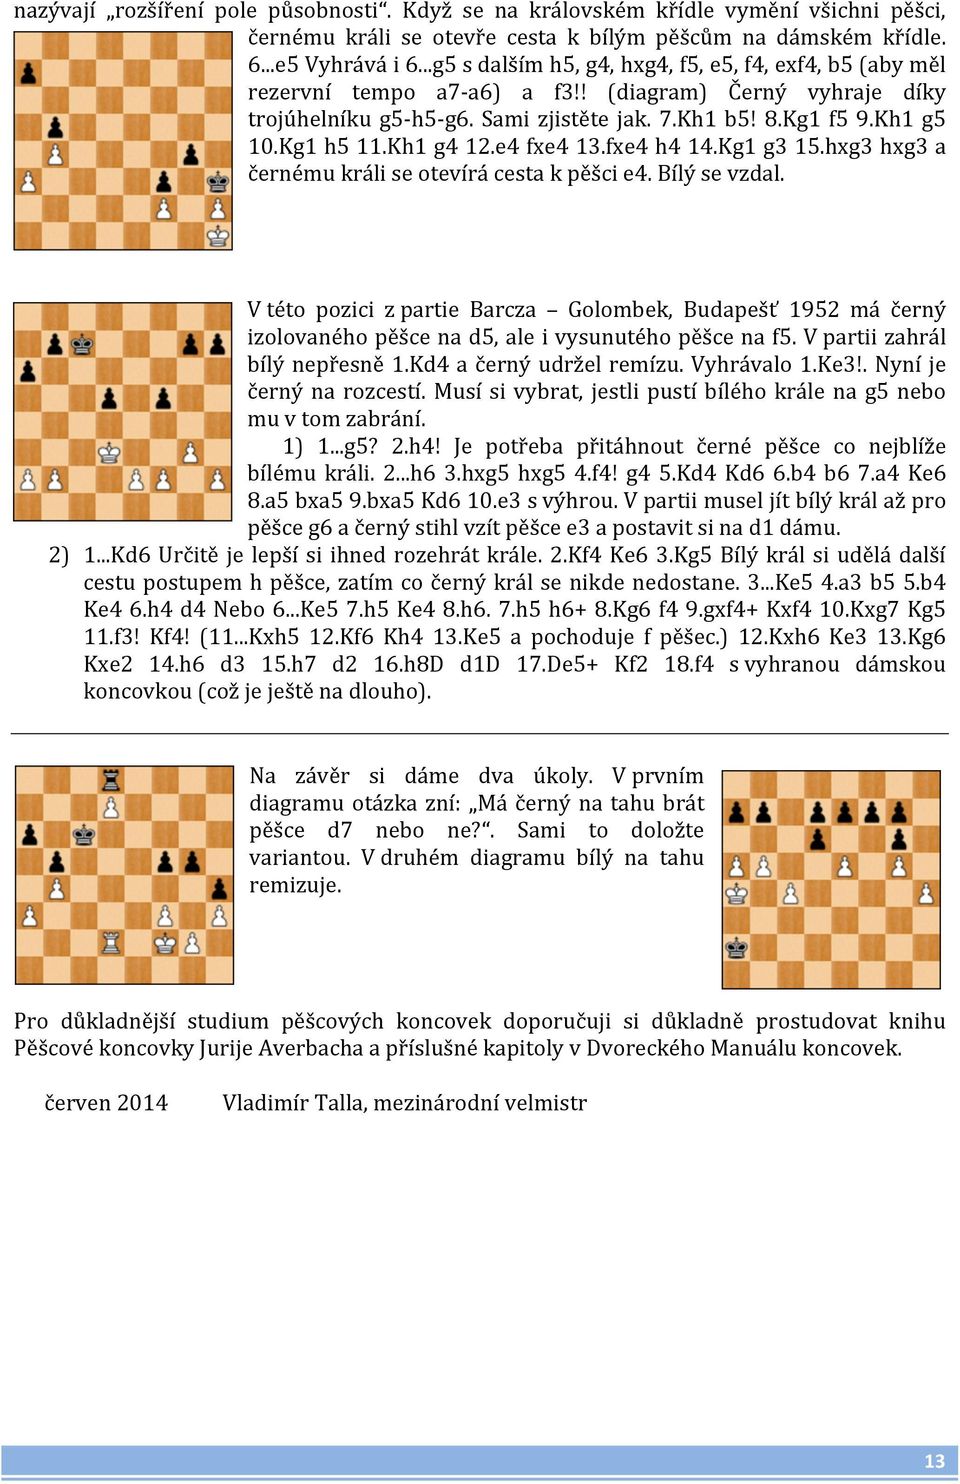 Kg1 h5 11.Kh1 g4 12.e4 fxe4 13.fxe4 h4 14.Kg1 g3 15.hxg3 hxg3 a černému králi se otevírá cesta k pěšci e4. Bílý se vzdal.